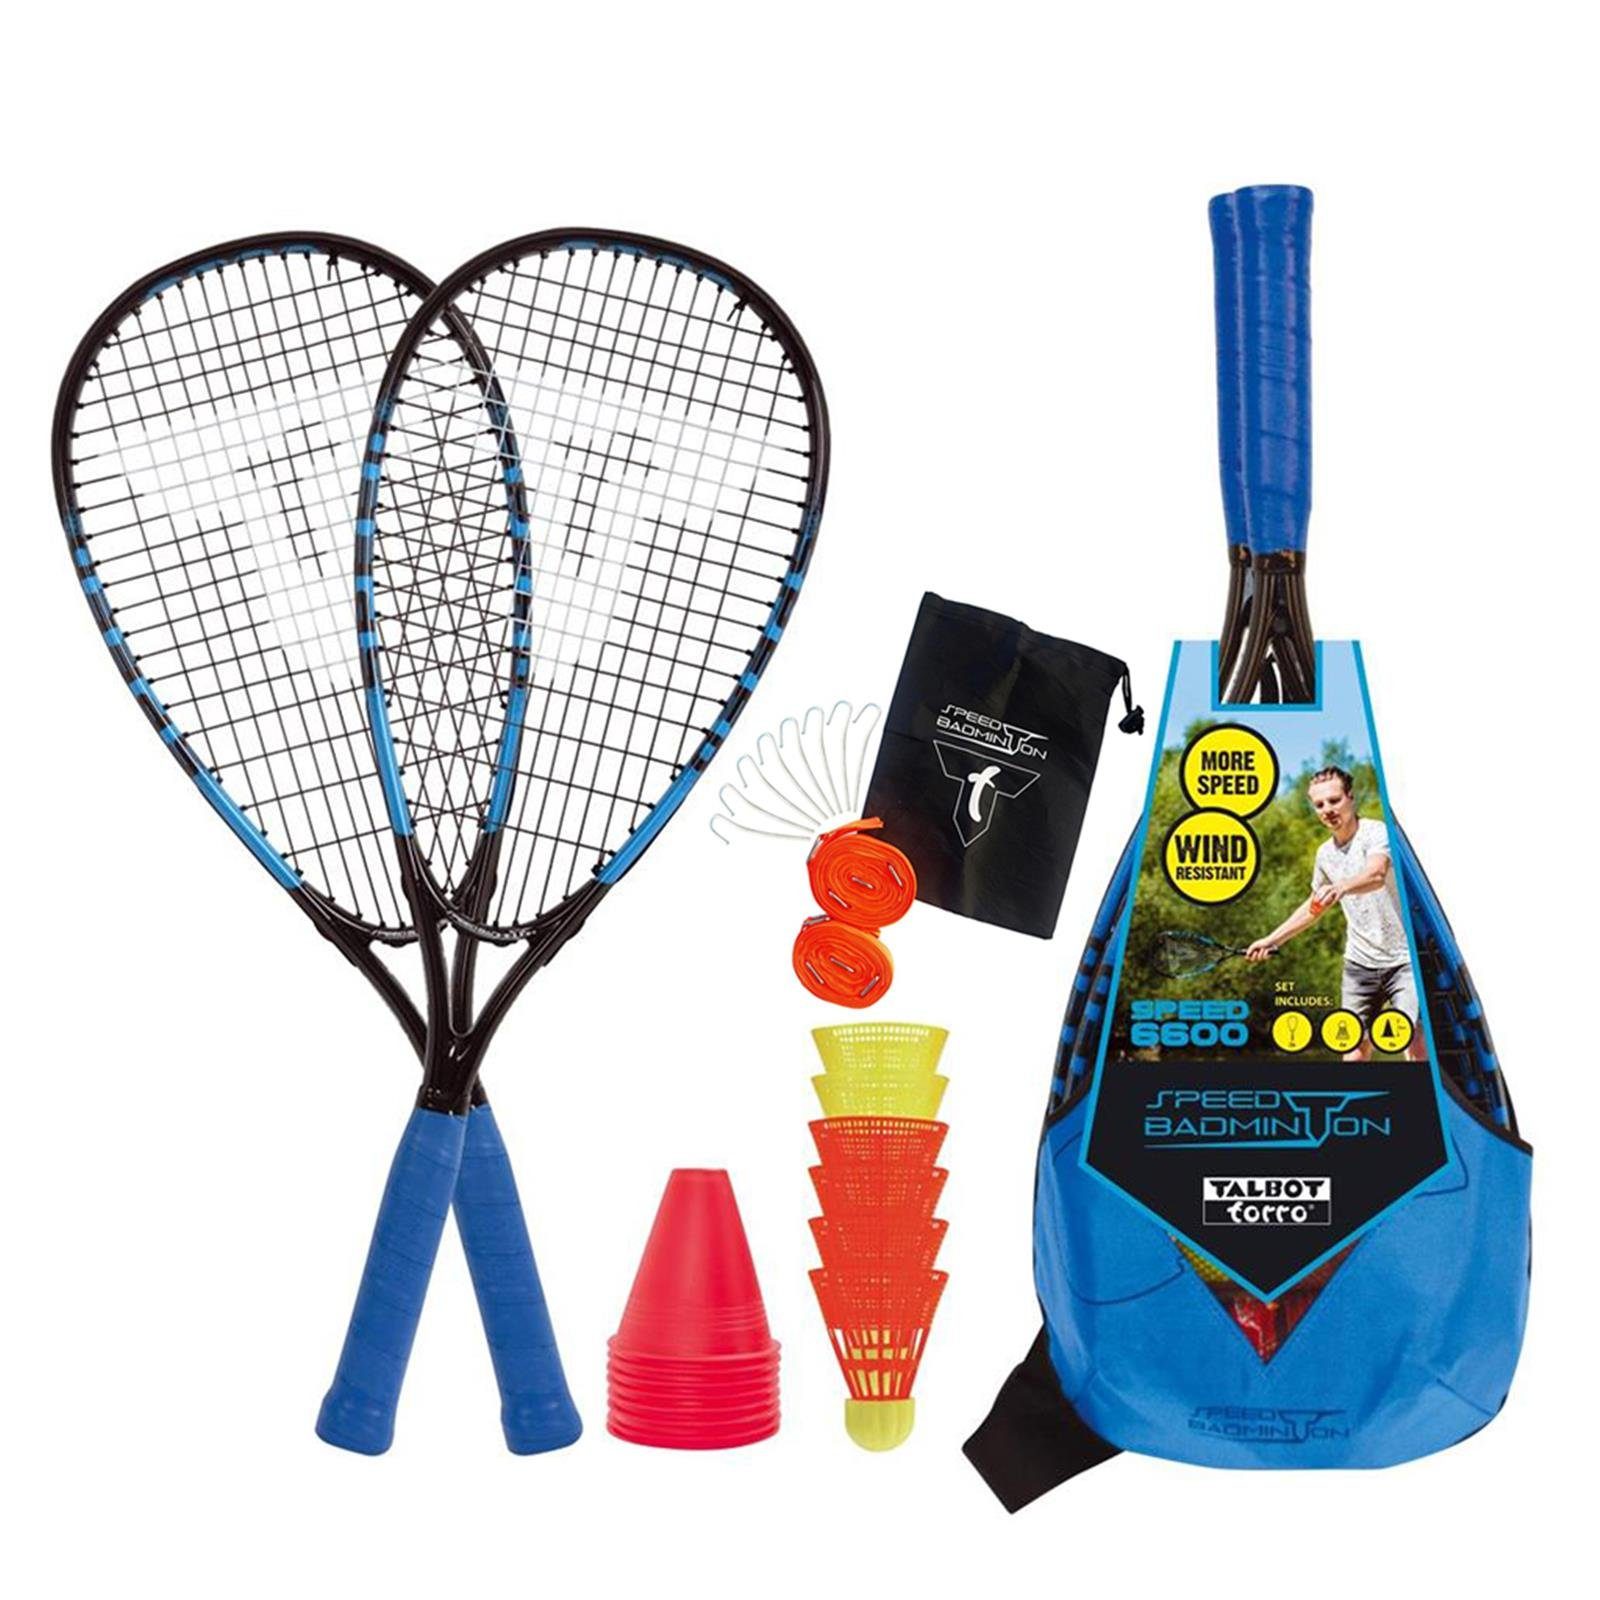 Speed-Badmintonschläger + Speed-Badminton Court Line Set 6600 Speed Talbot-Torro